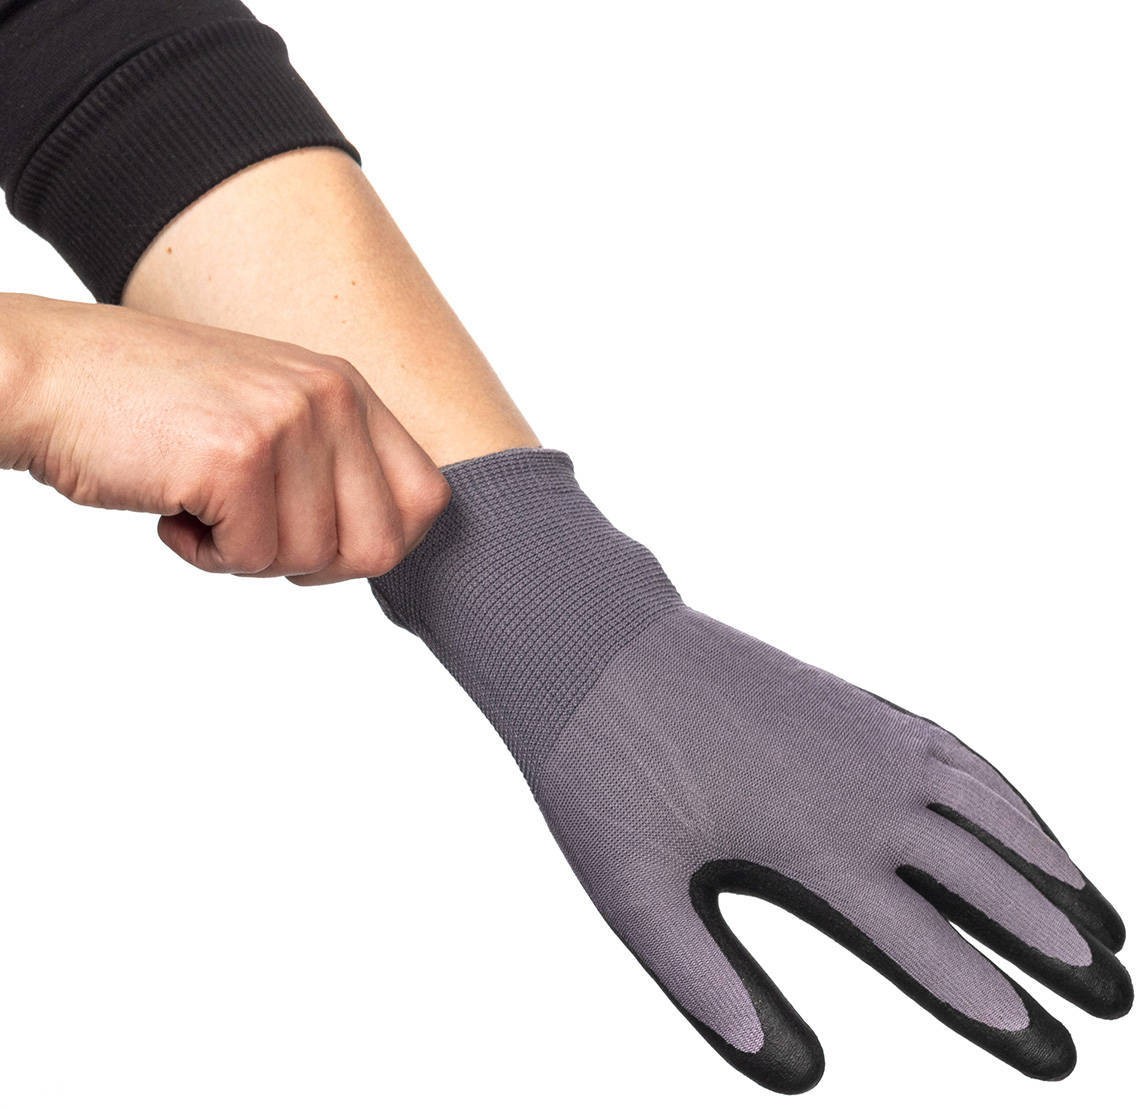 Перчатки рабочие с полиуретановым покрытием утепленные КВТ С-44, серия Профи - фото